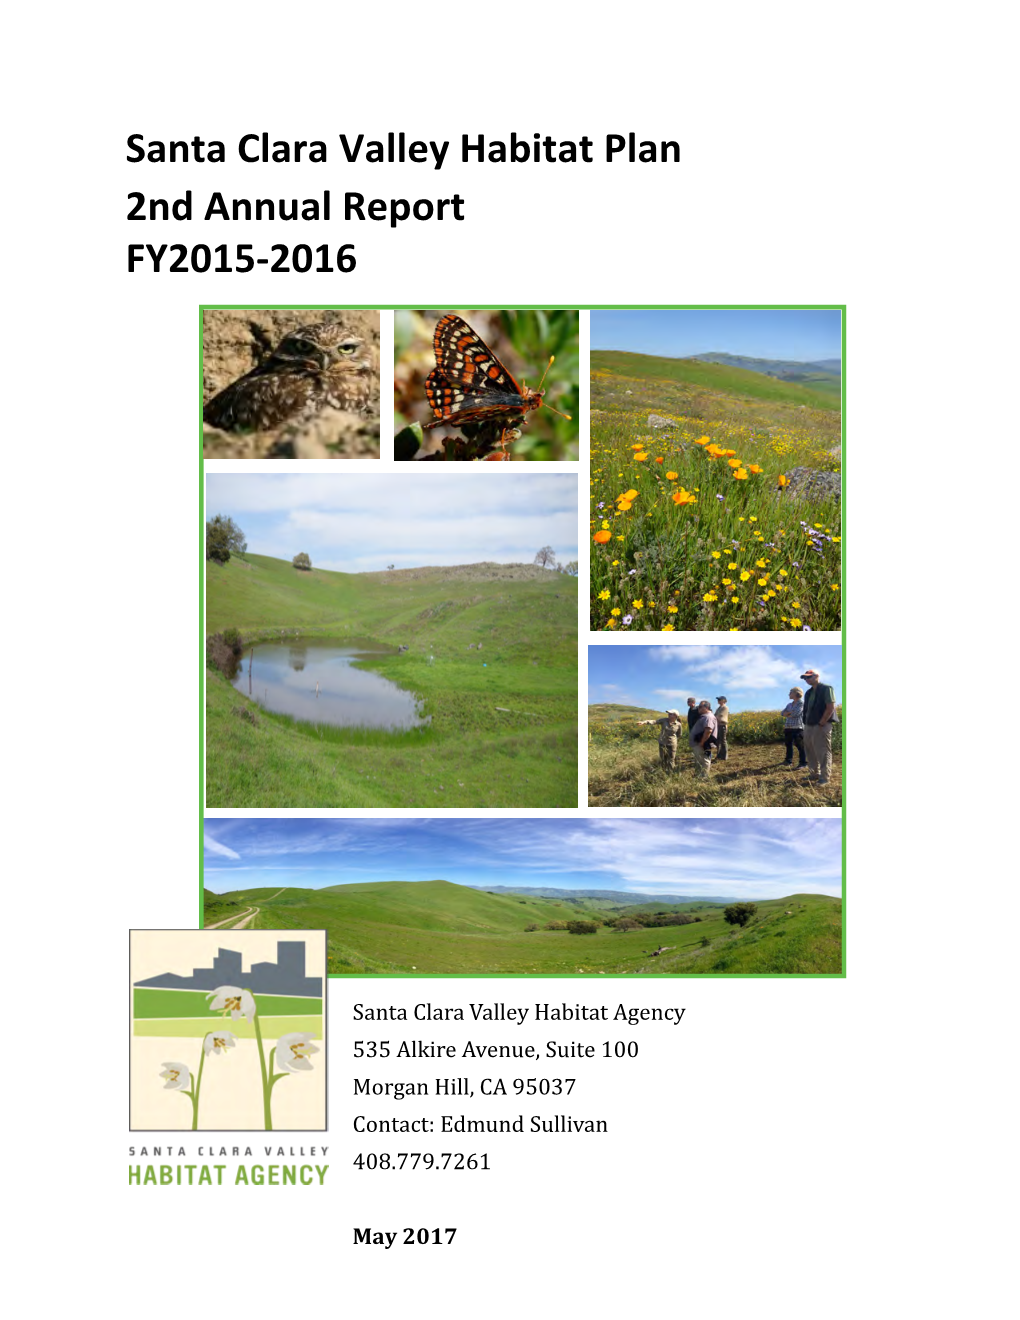 Santa Clara Valley Habitat Plan 2Nd Annual Report FY2015-2016